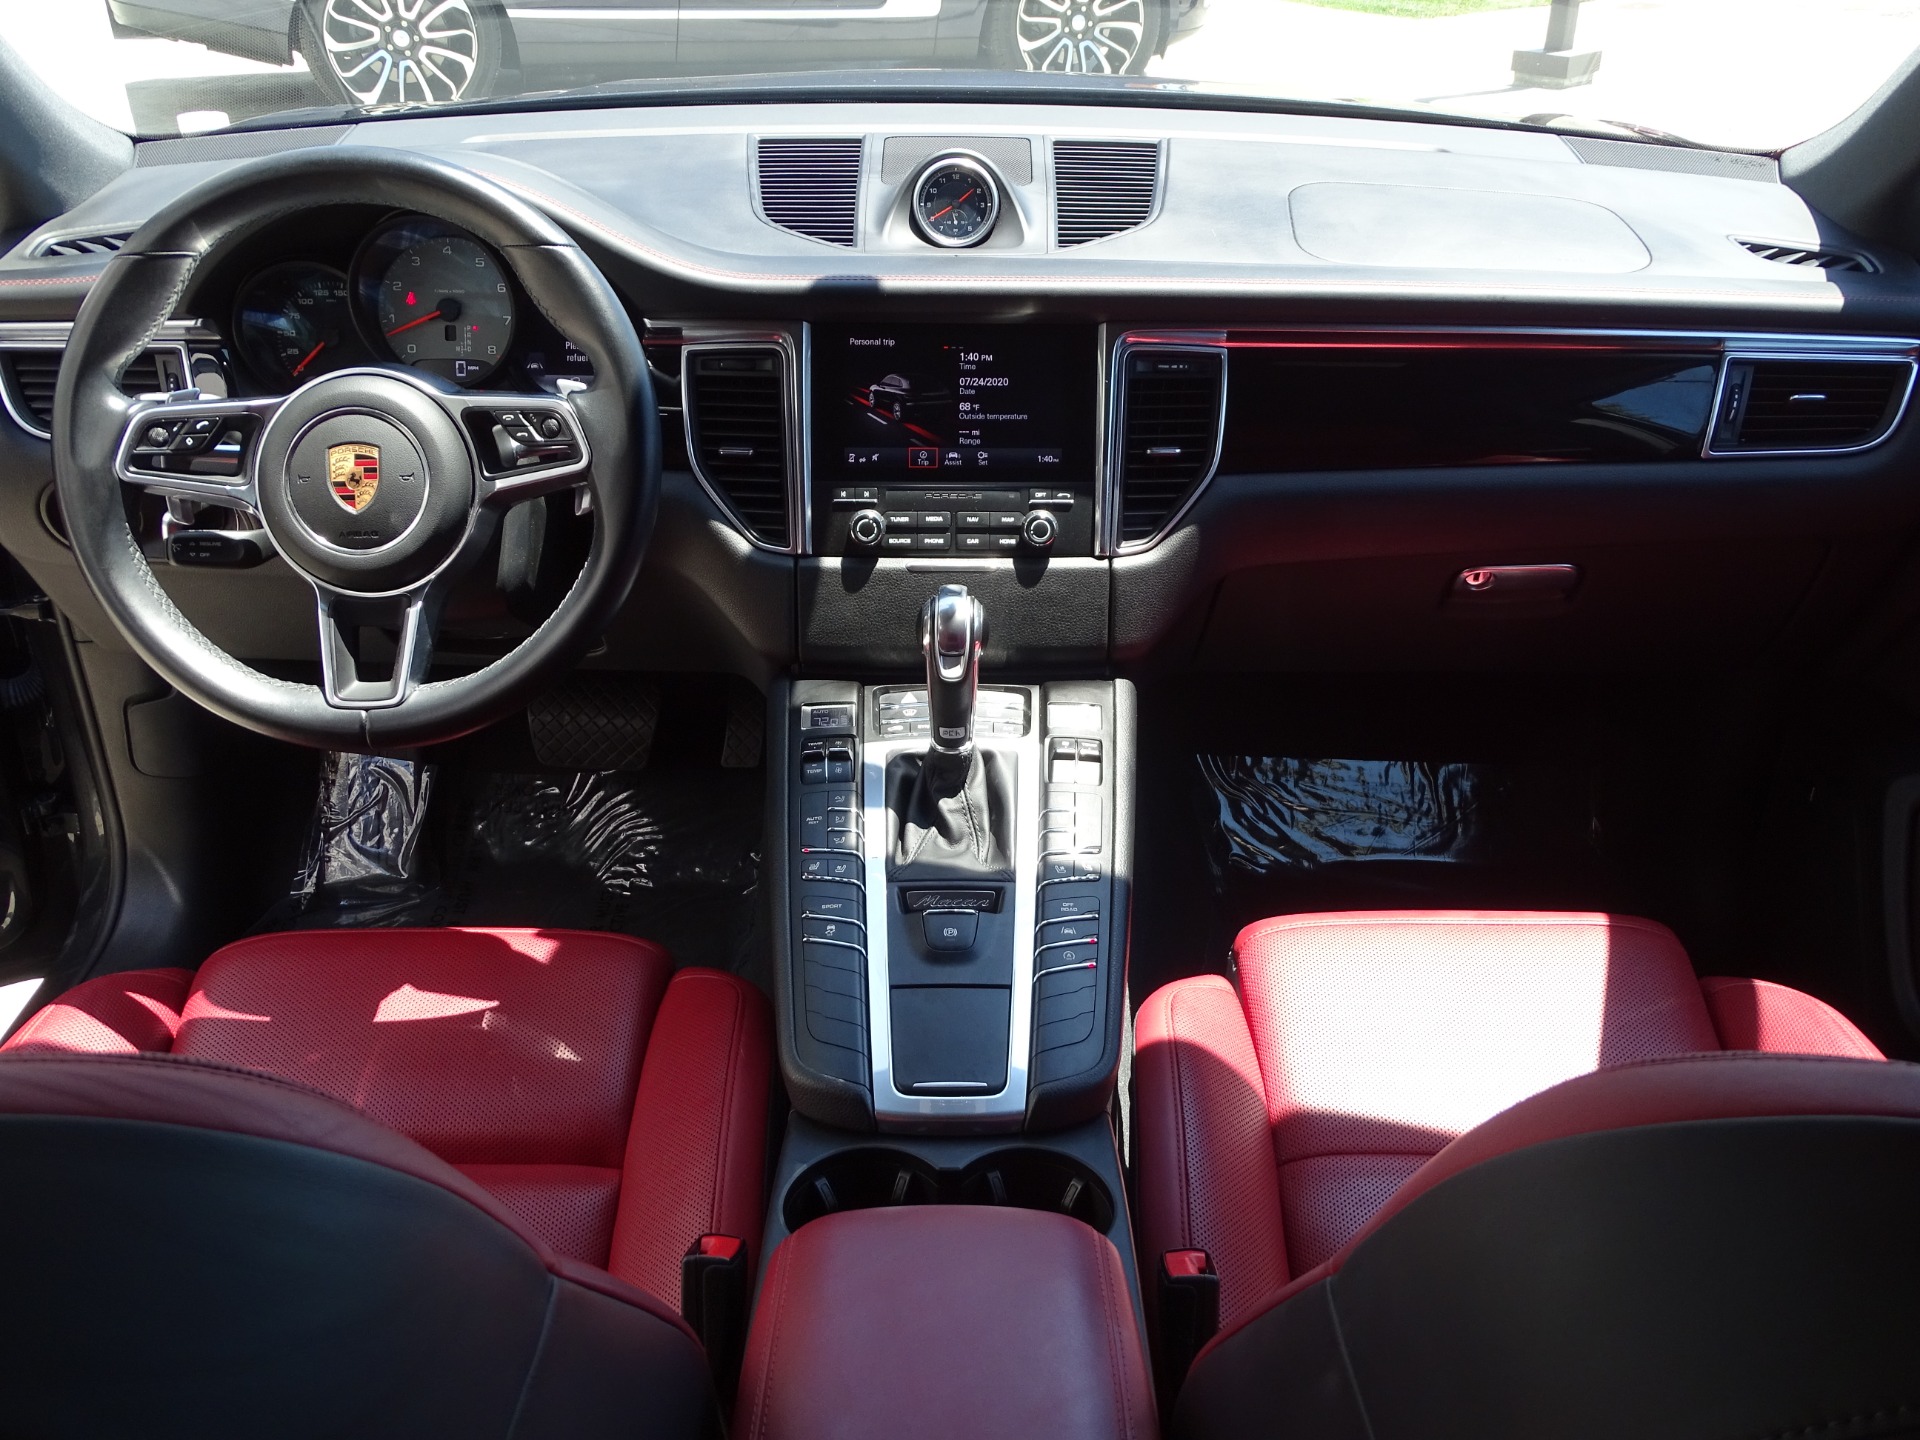 Porsche Macan S Interior & Exterior Images - Macan S Pictures